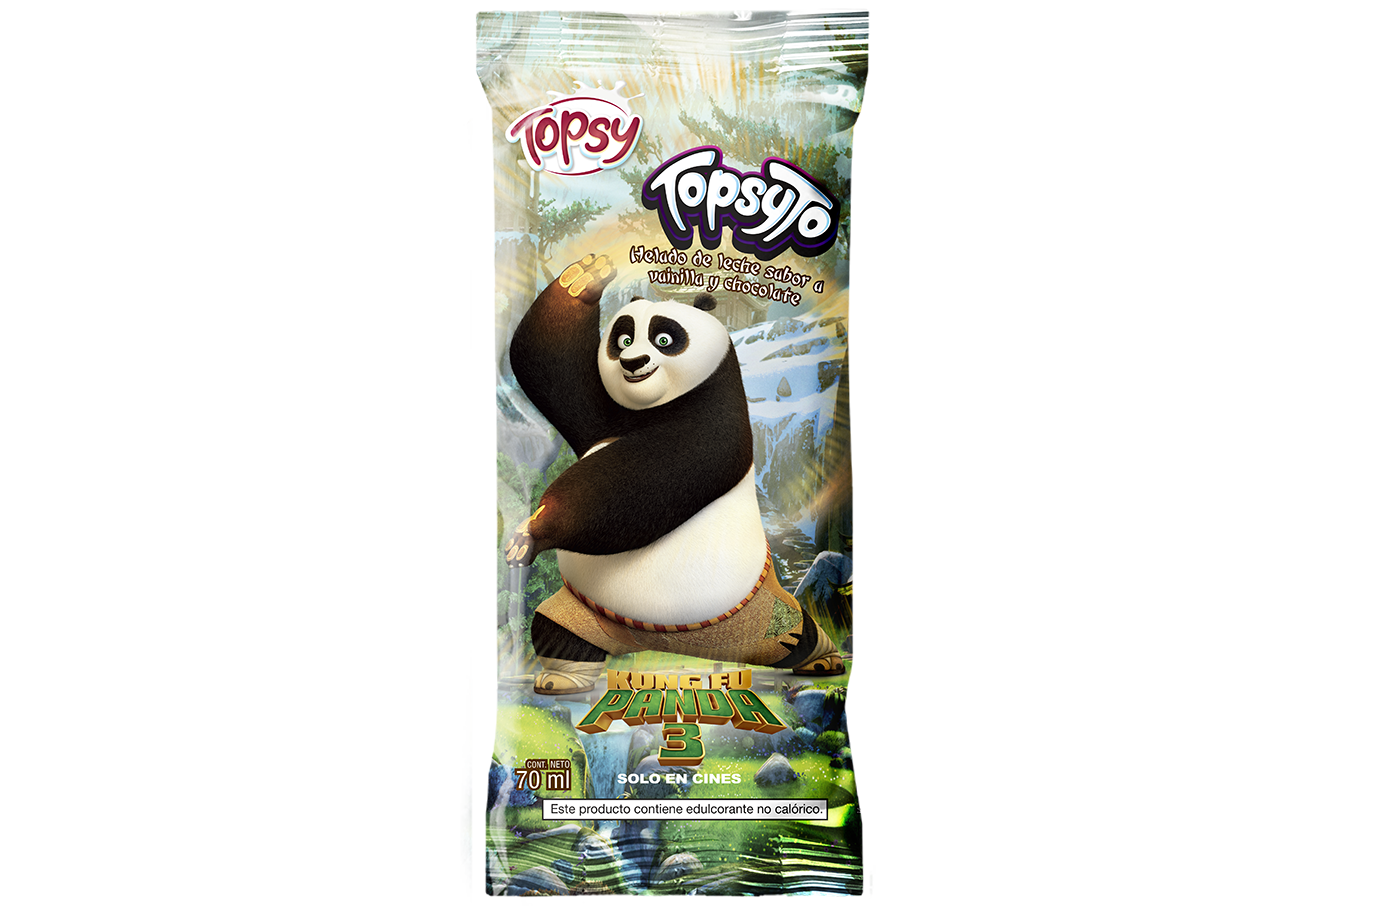 helados ice-cream kung fu panda promocional